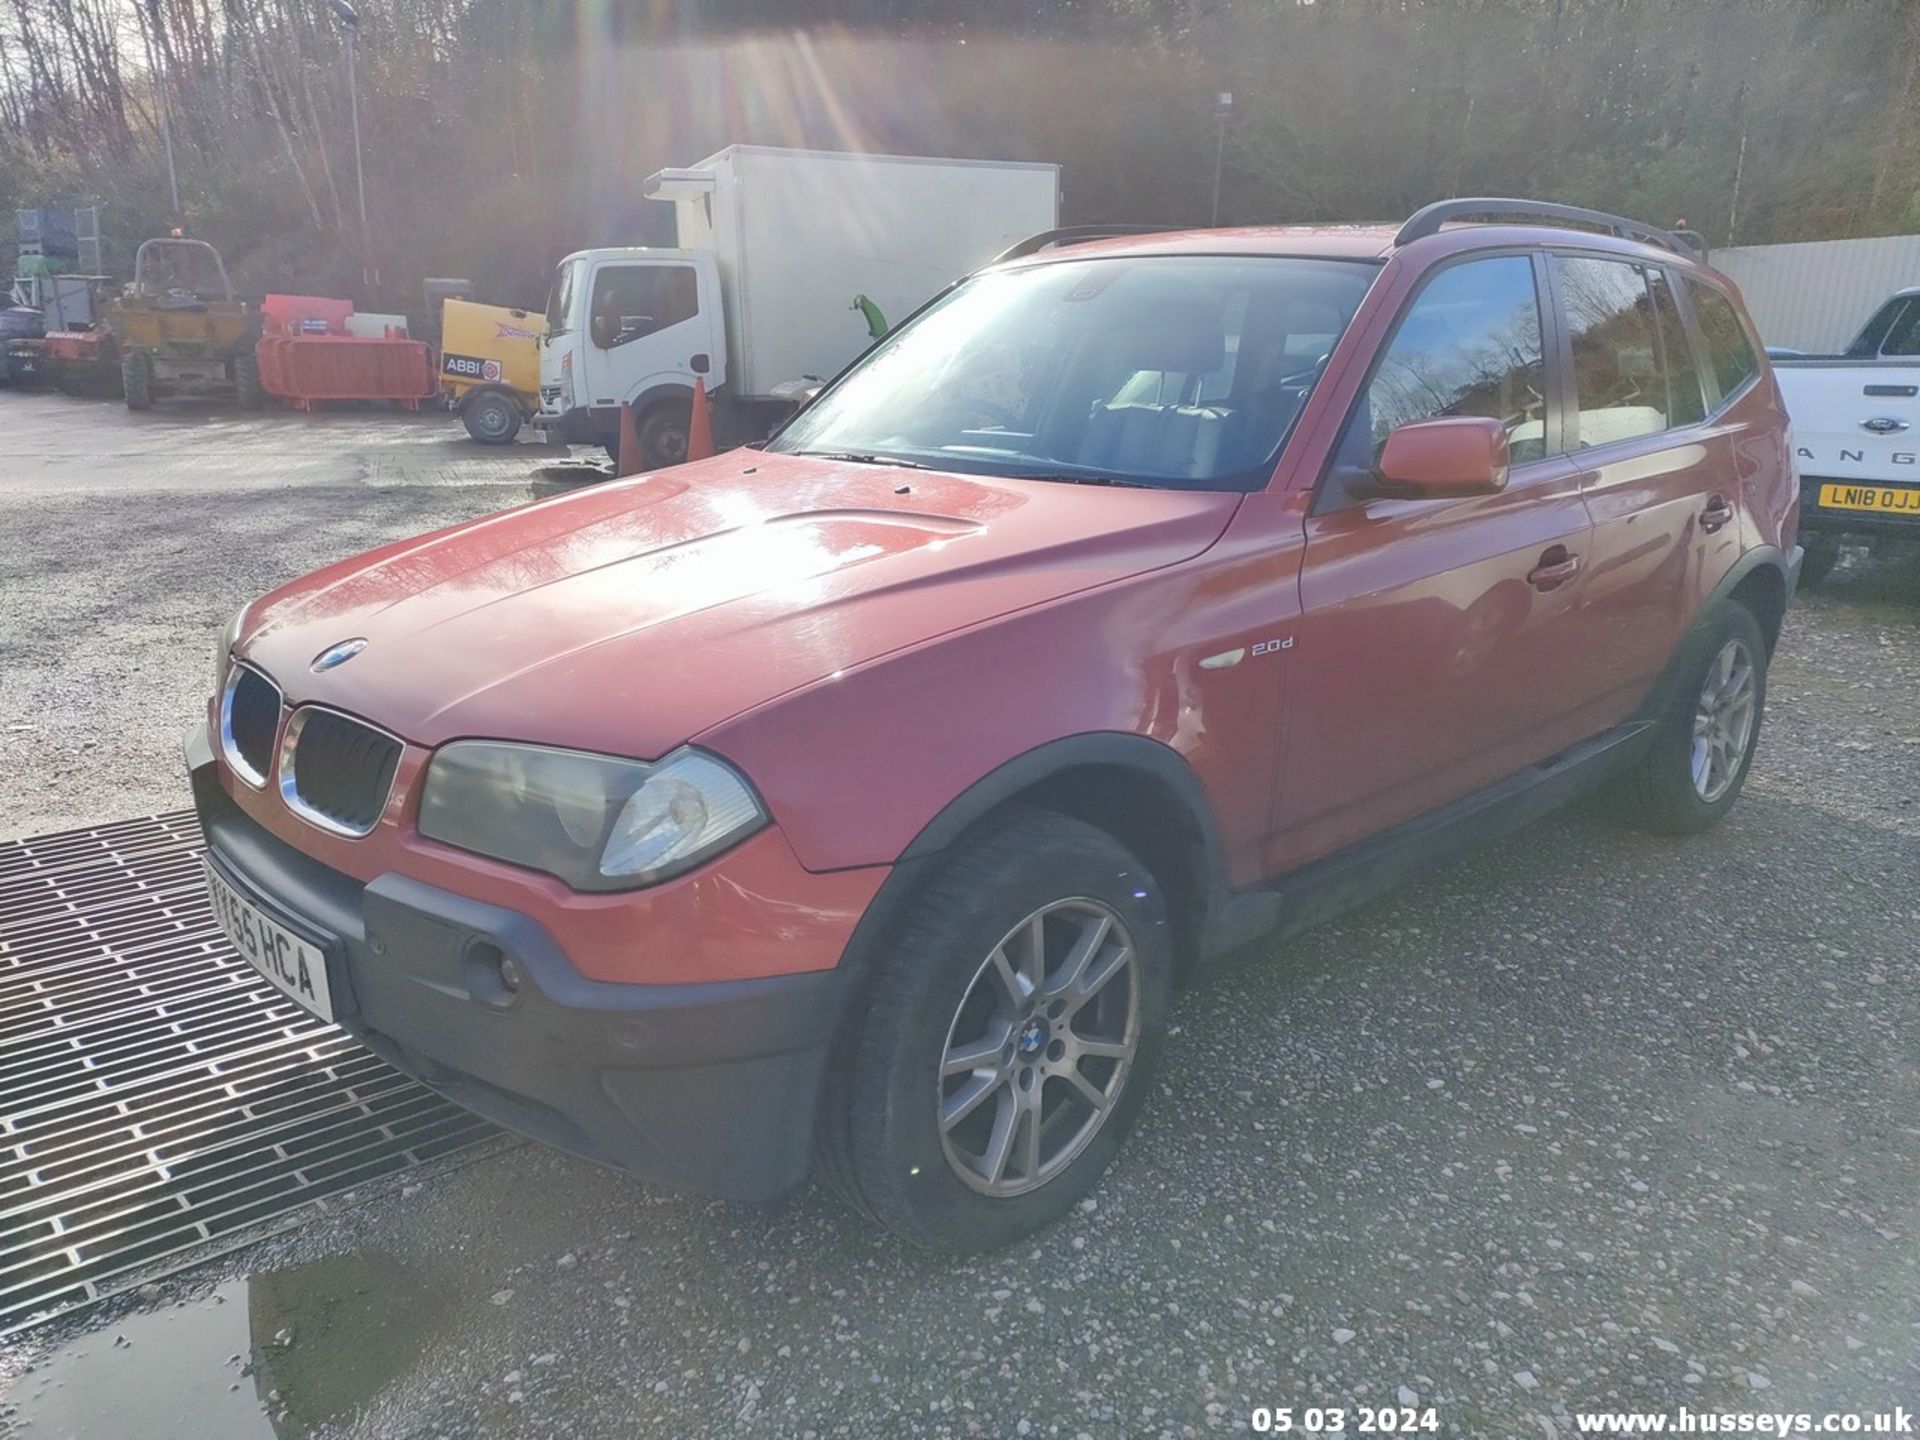 05/55 BMW X3 D SE - 1995cc 5dr Estate (Red, 188k) - Image 19 of 51